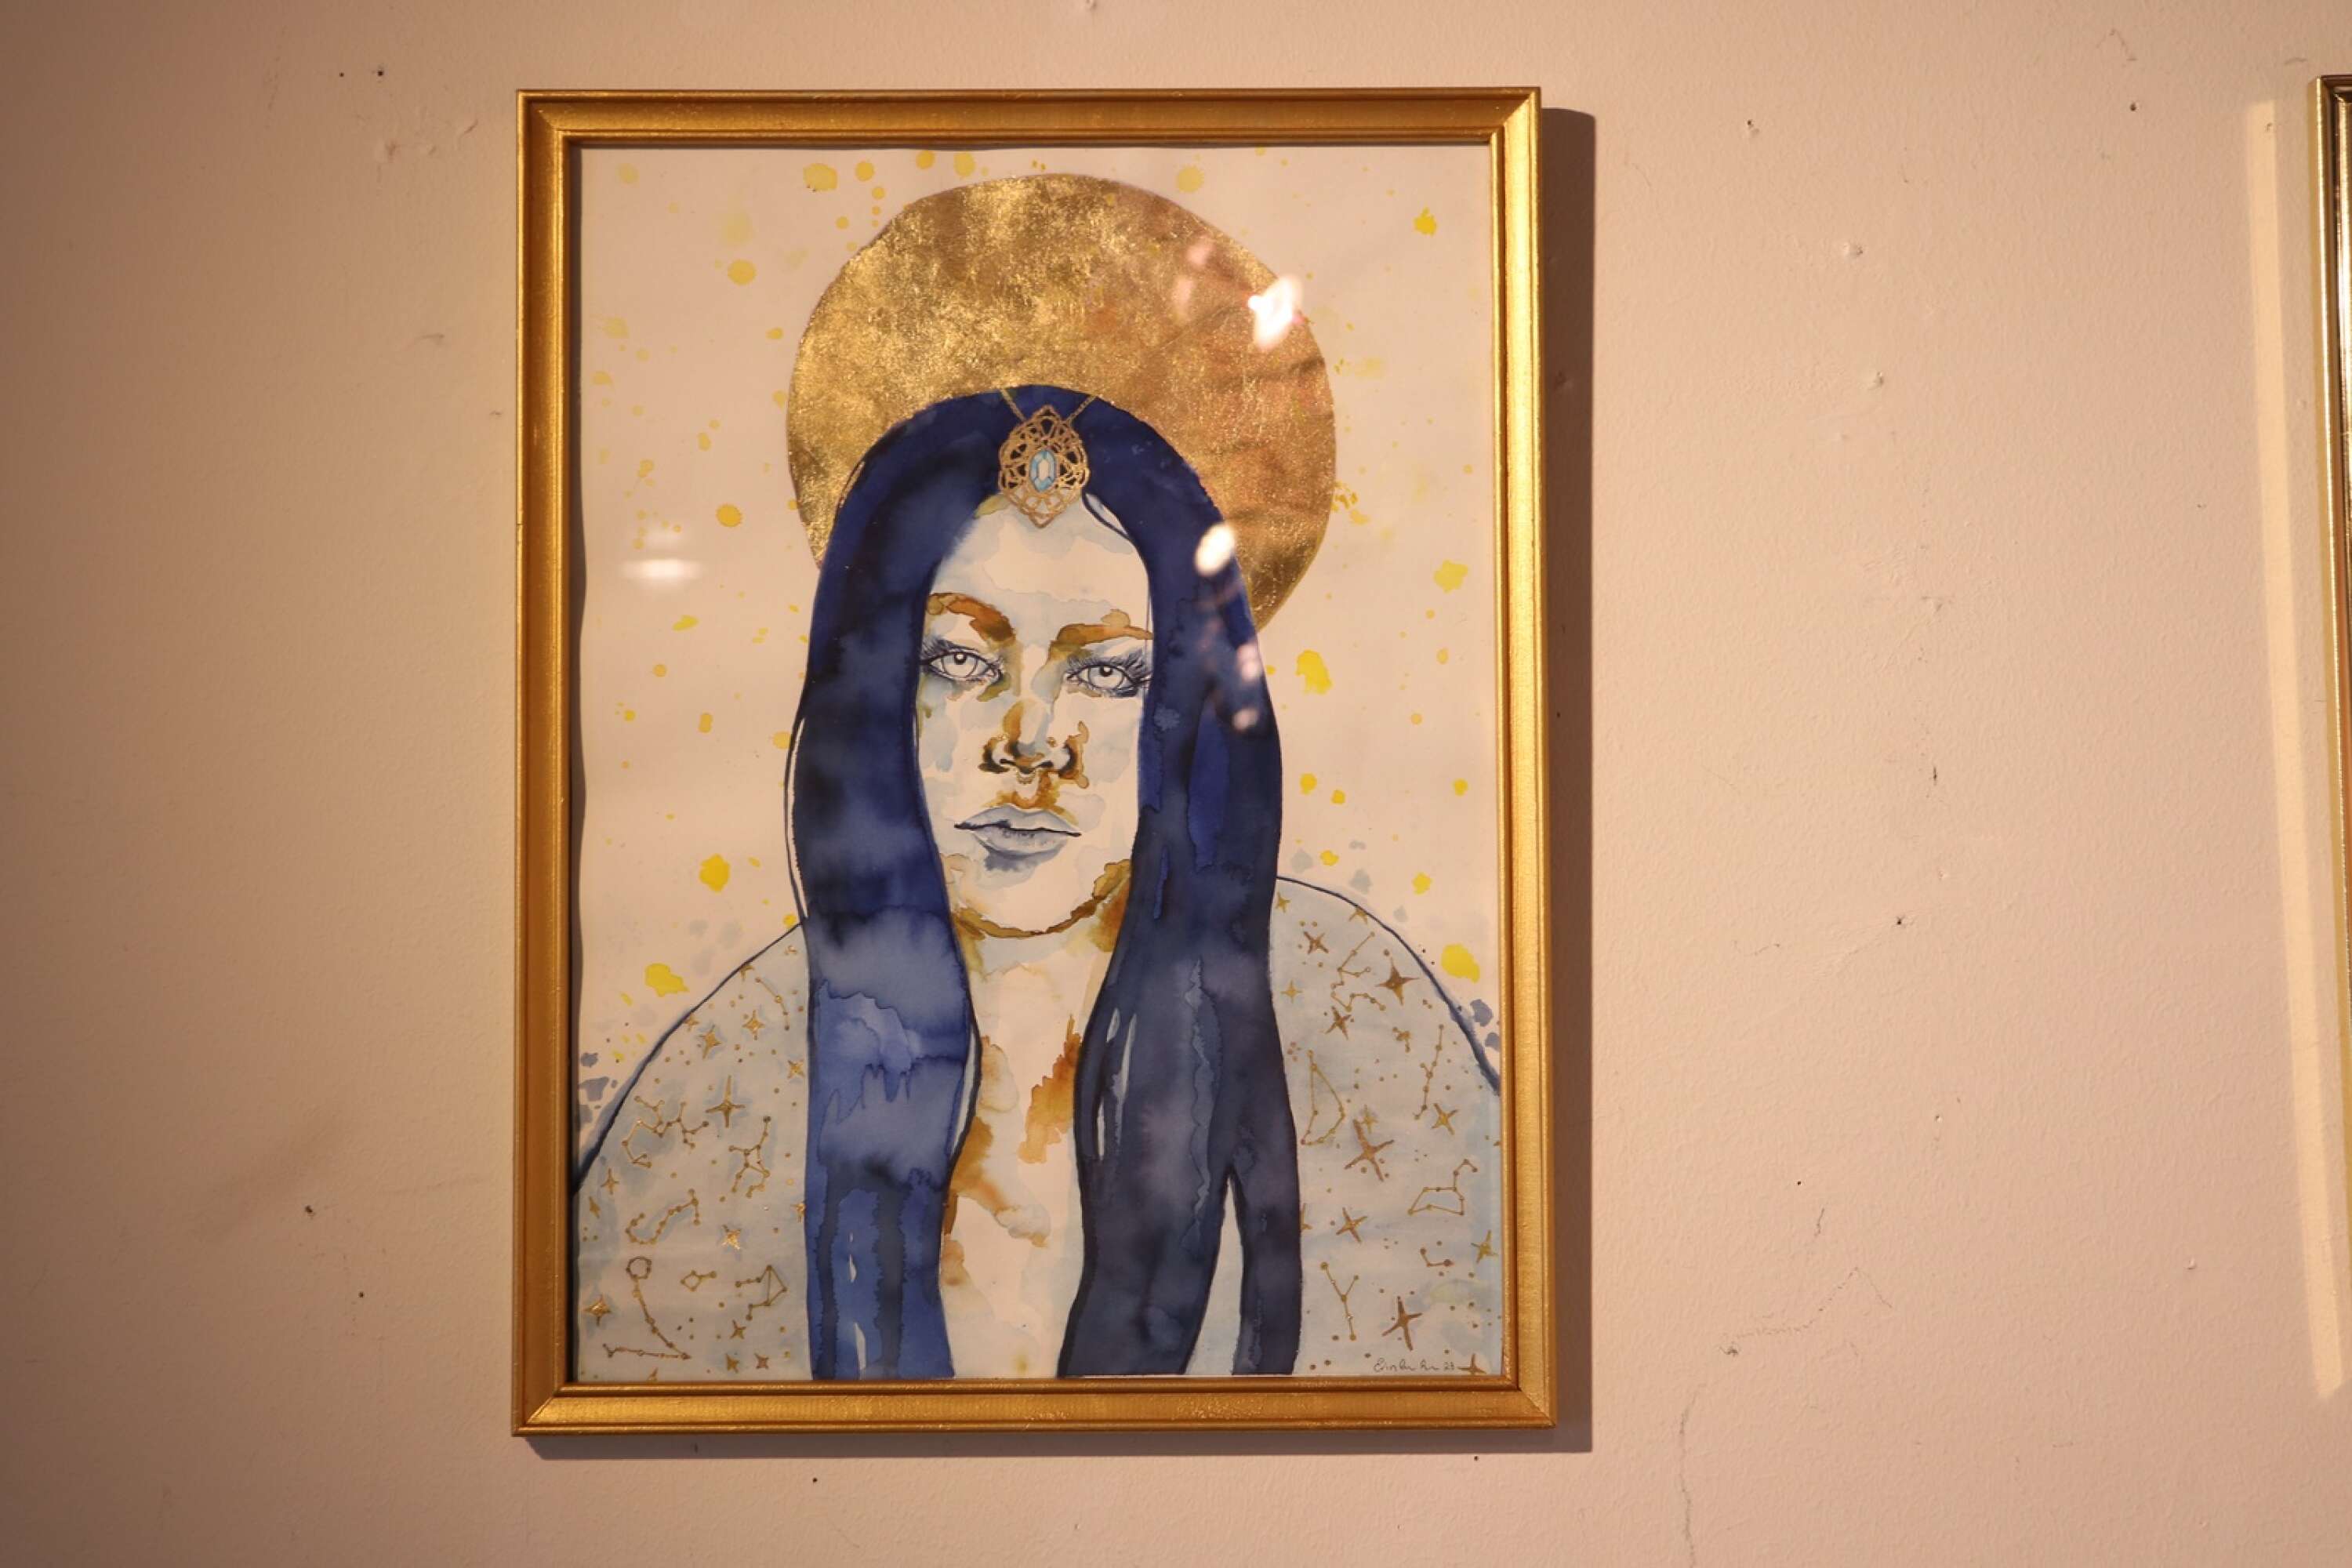 Erin arbetade med bladguld när hon målade ett porträtt av sig själv. 